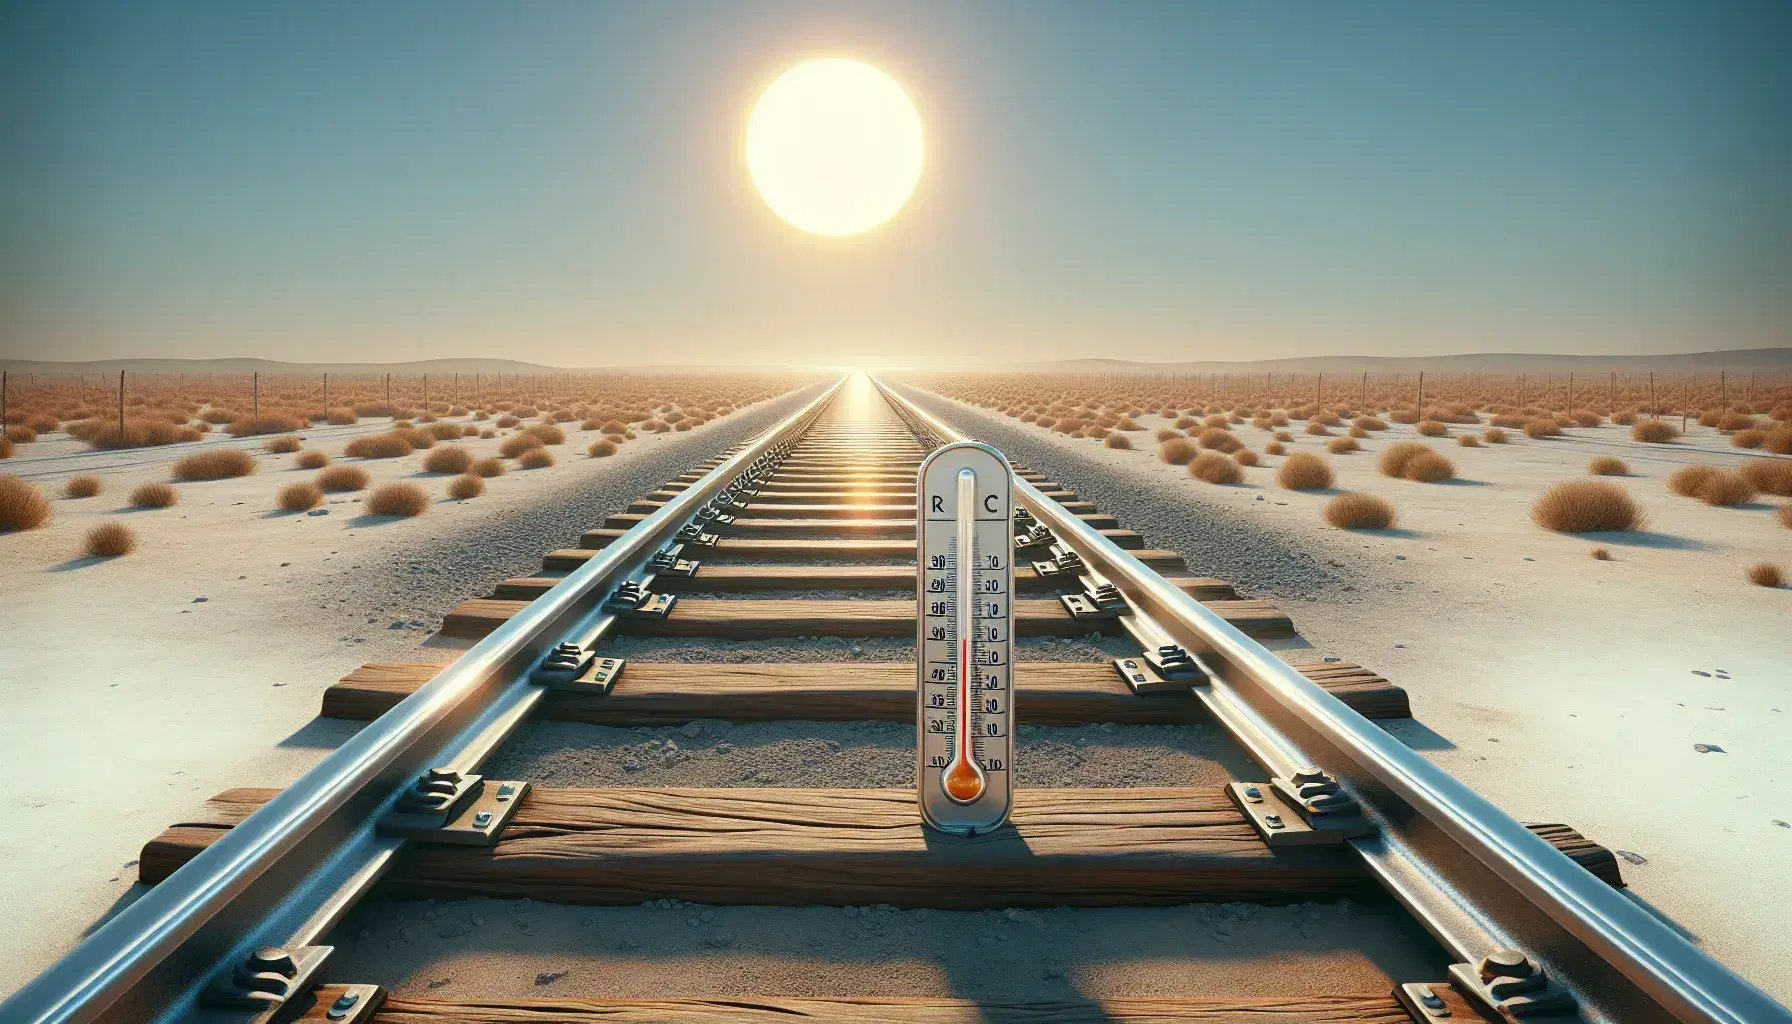 Binari ferroviari che si estendono all'orizzonte in una giornata soleggiata con termometro a mercurio indicante alte temperature.